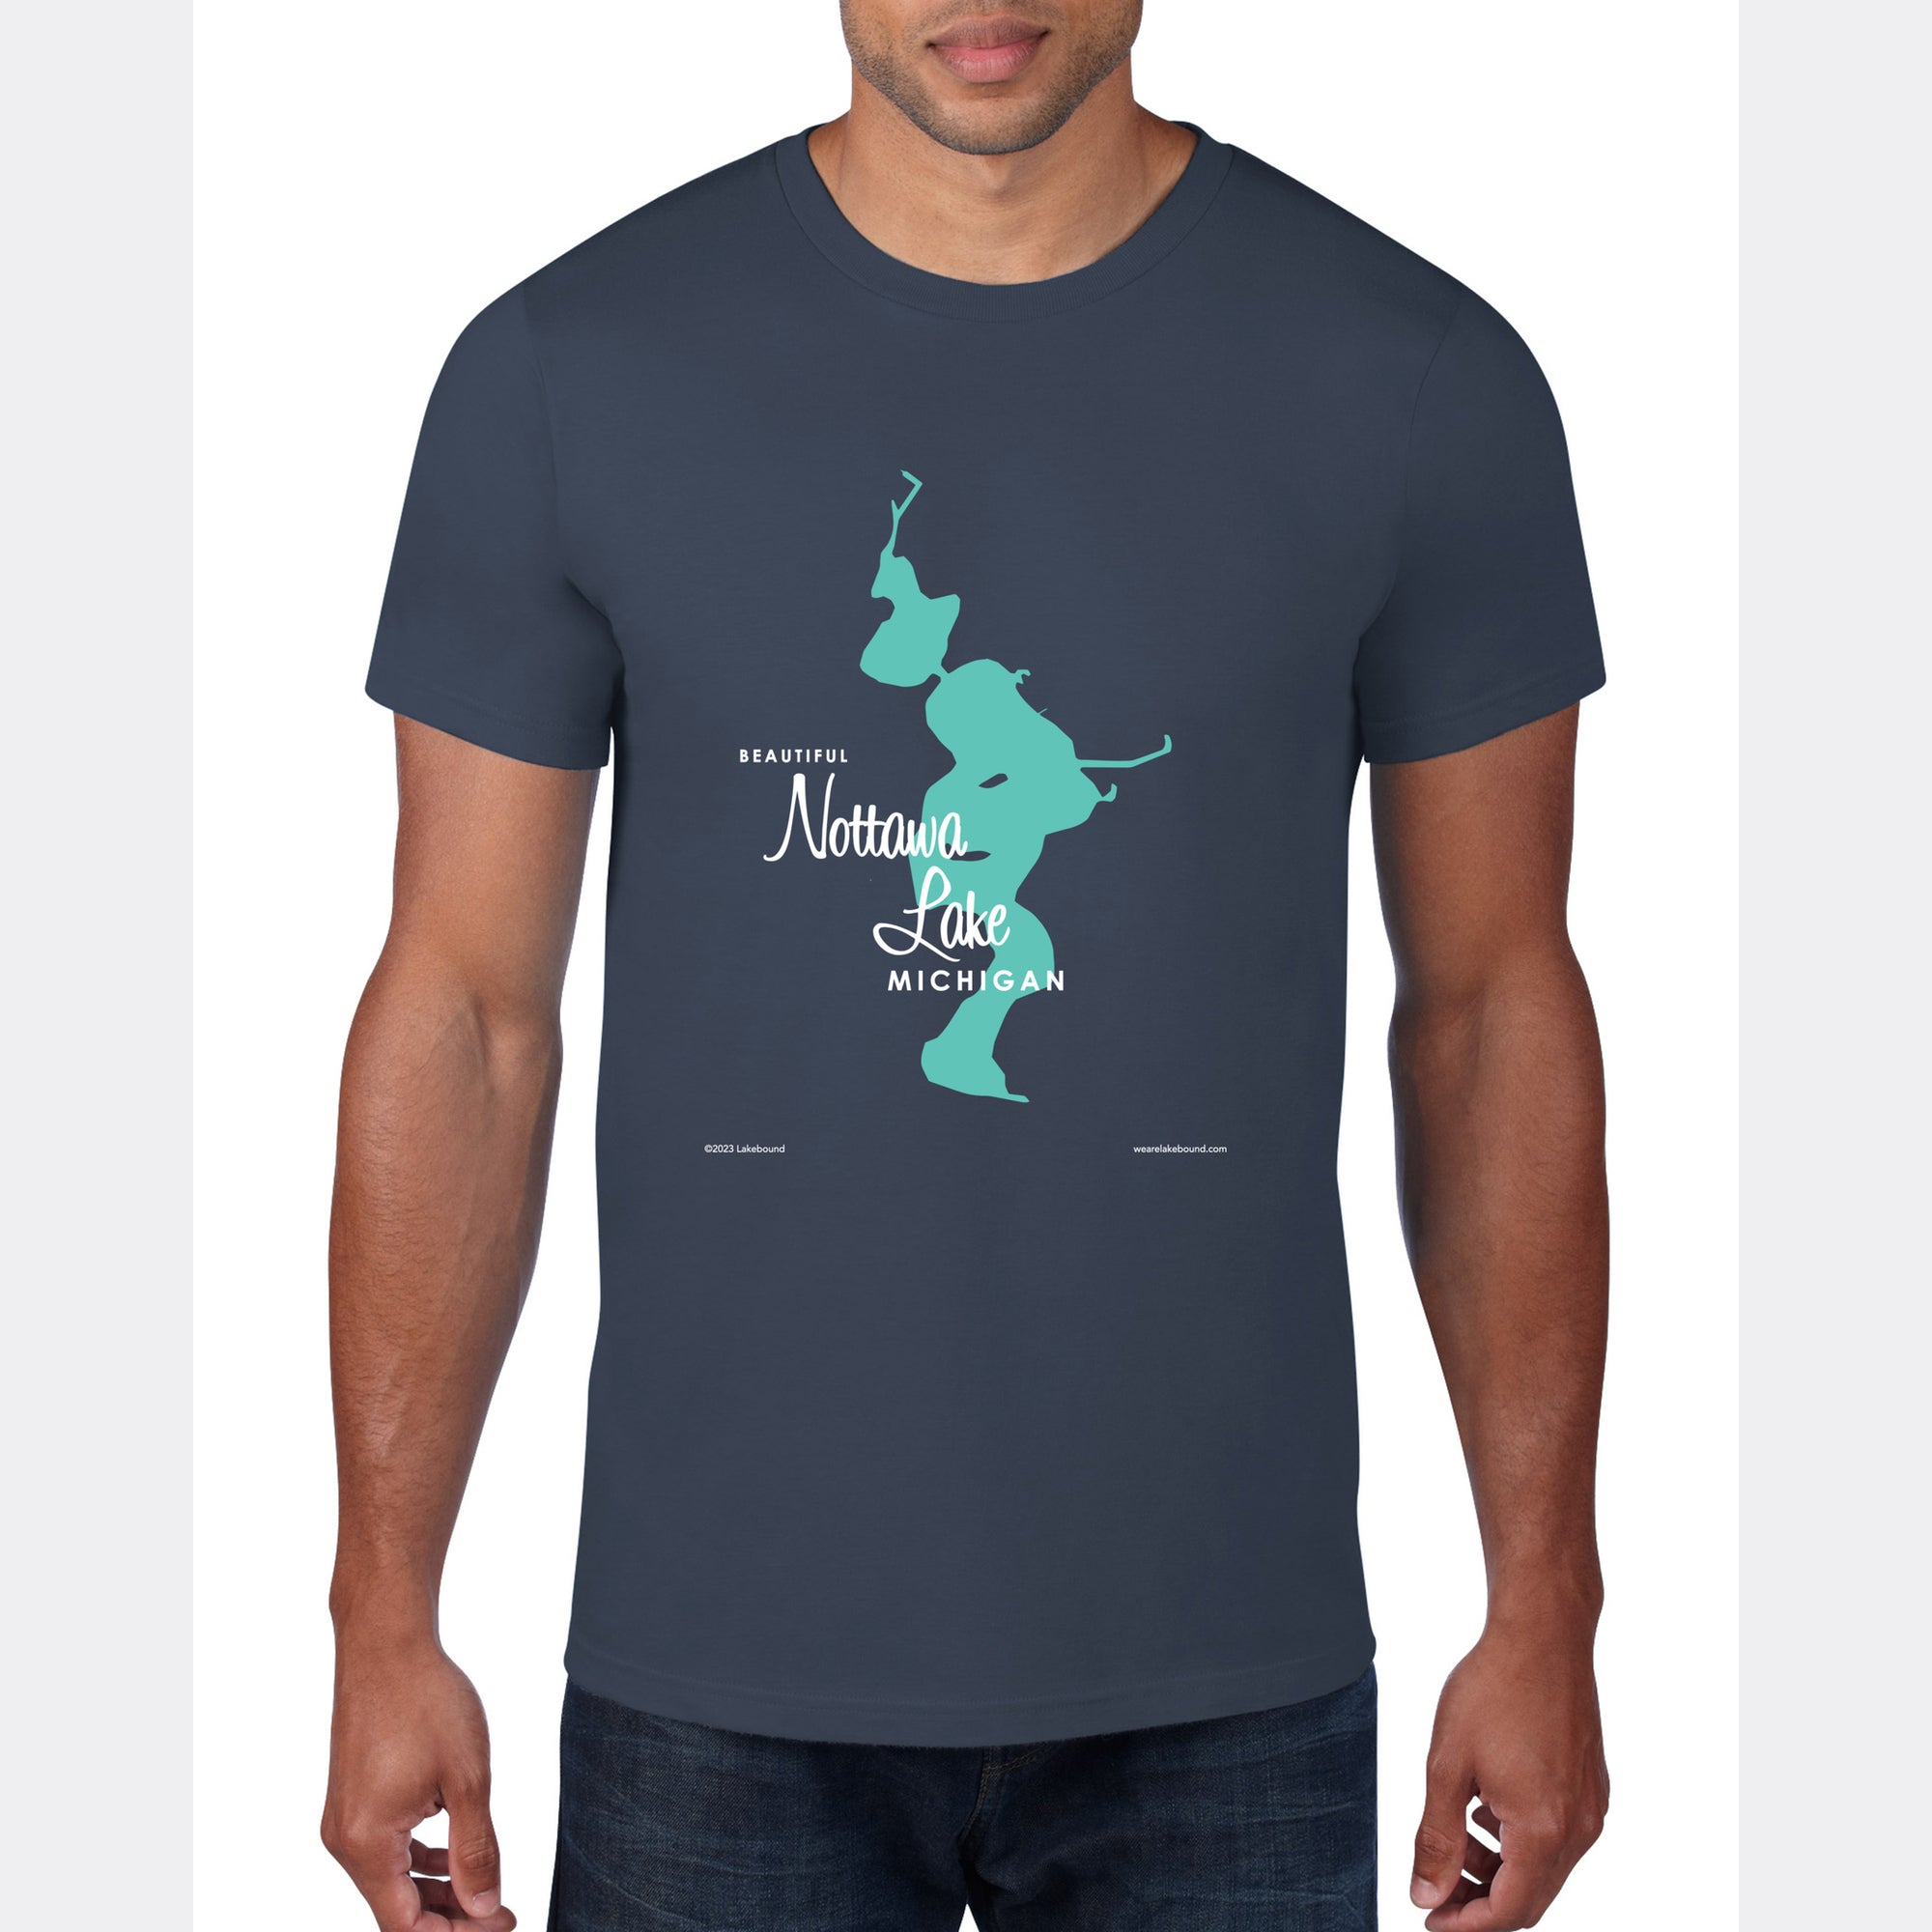 Nottawa Lake Michigan, T-Shirt